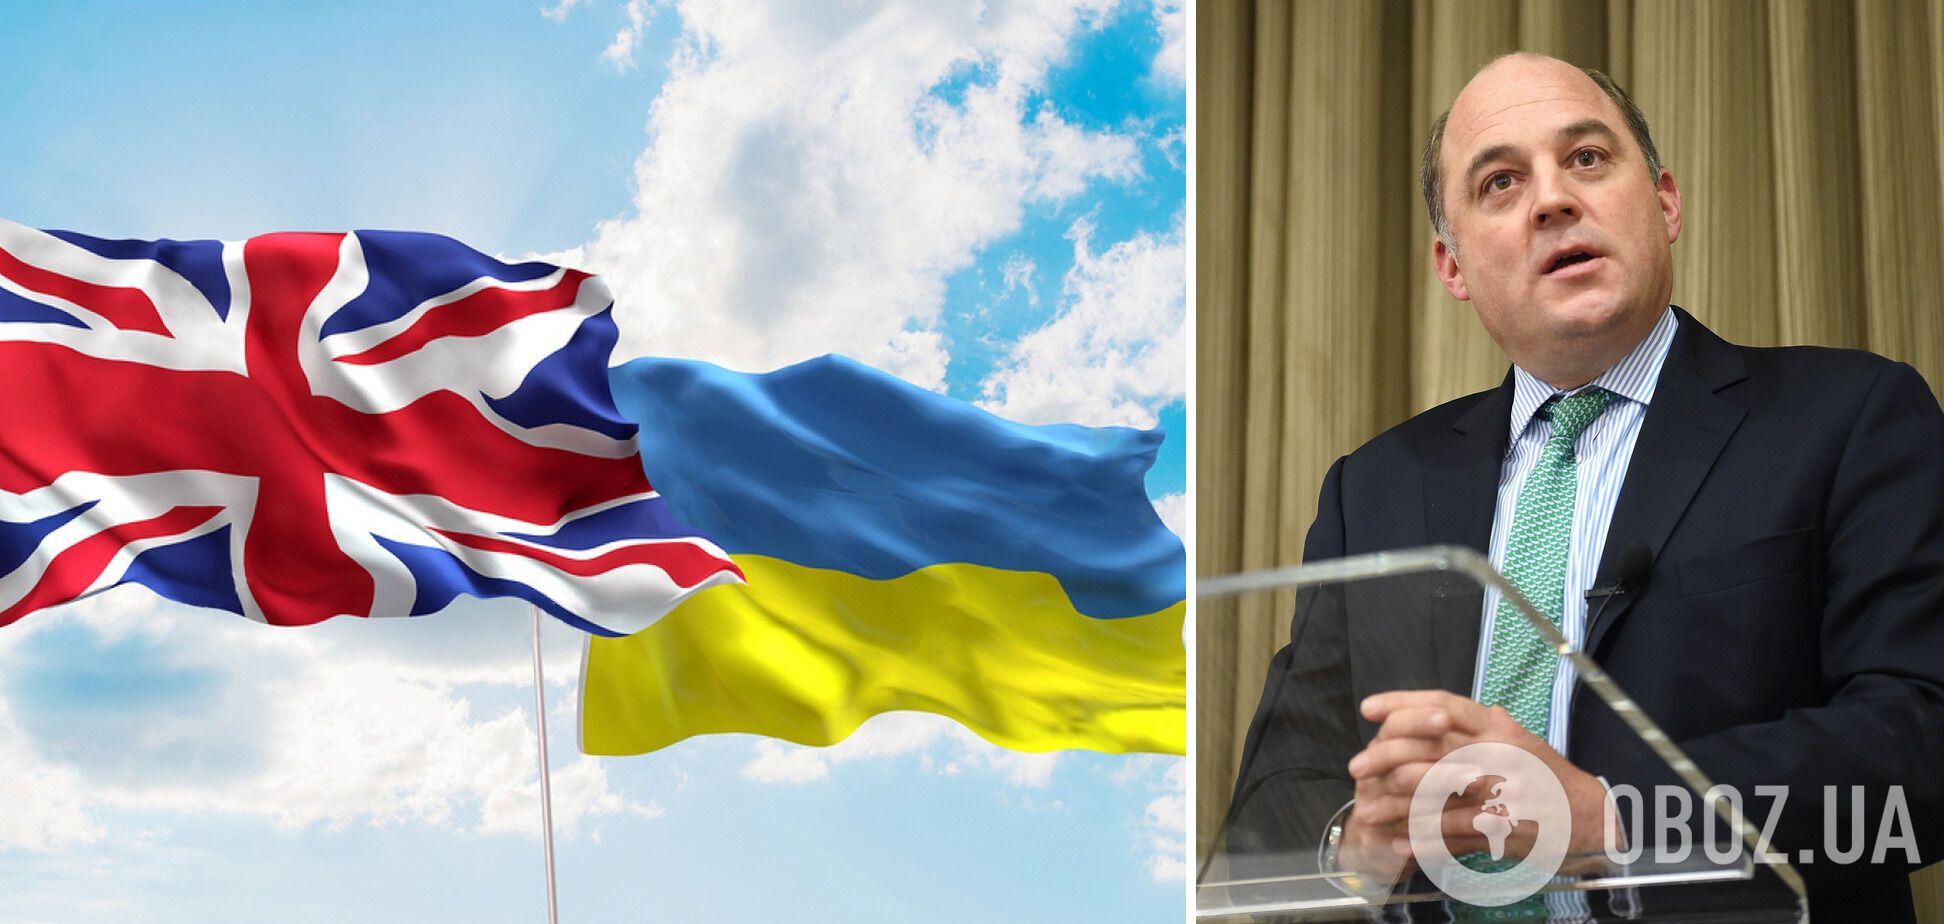 Бен Уоллес: Украина – не член НАТО, поэтому вряд ли кто-то собирается посылать туда войска